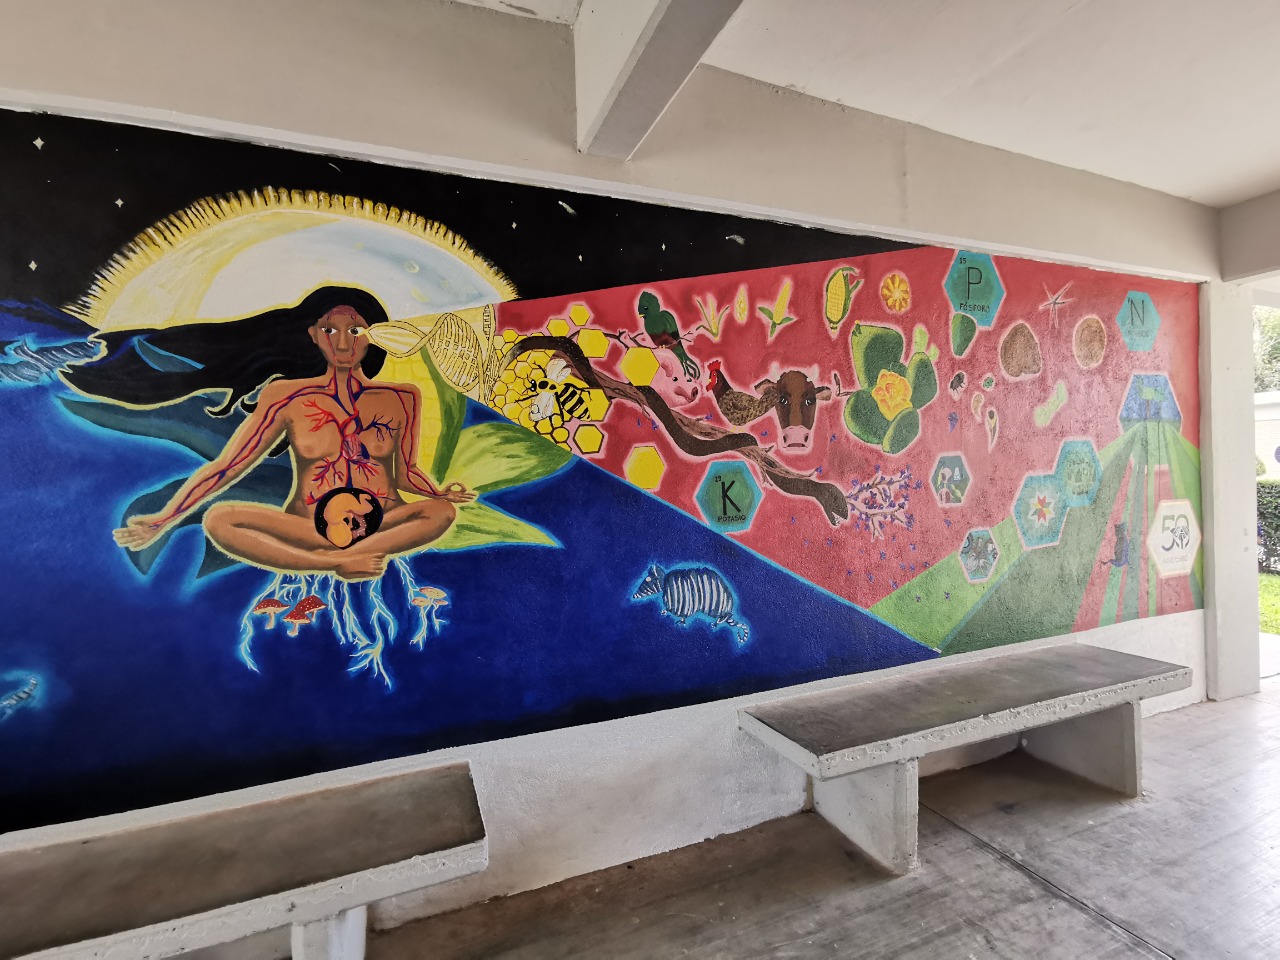 Fue develado el mural conmemorativo “Creadora” y entregados reconocimientos a docentes fundadores y ex directores.